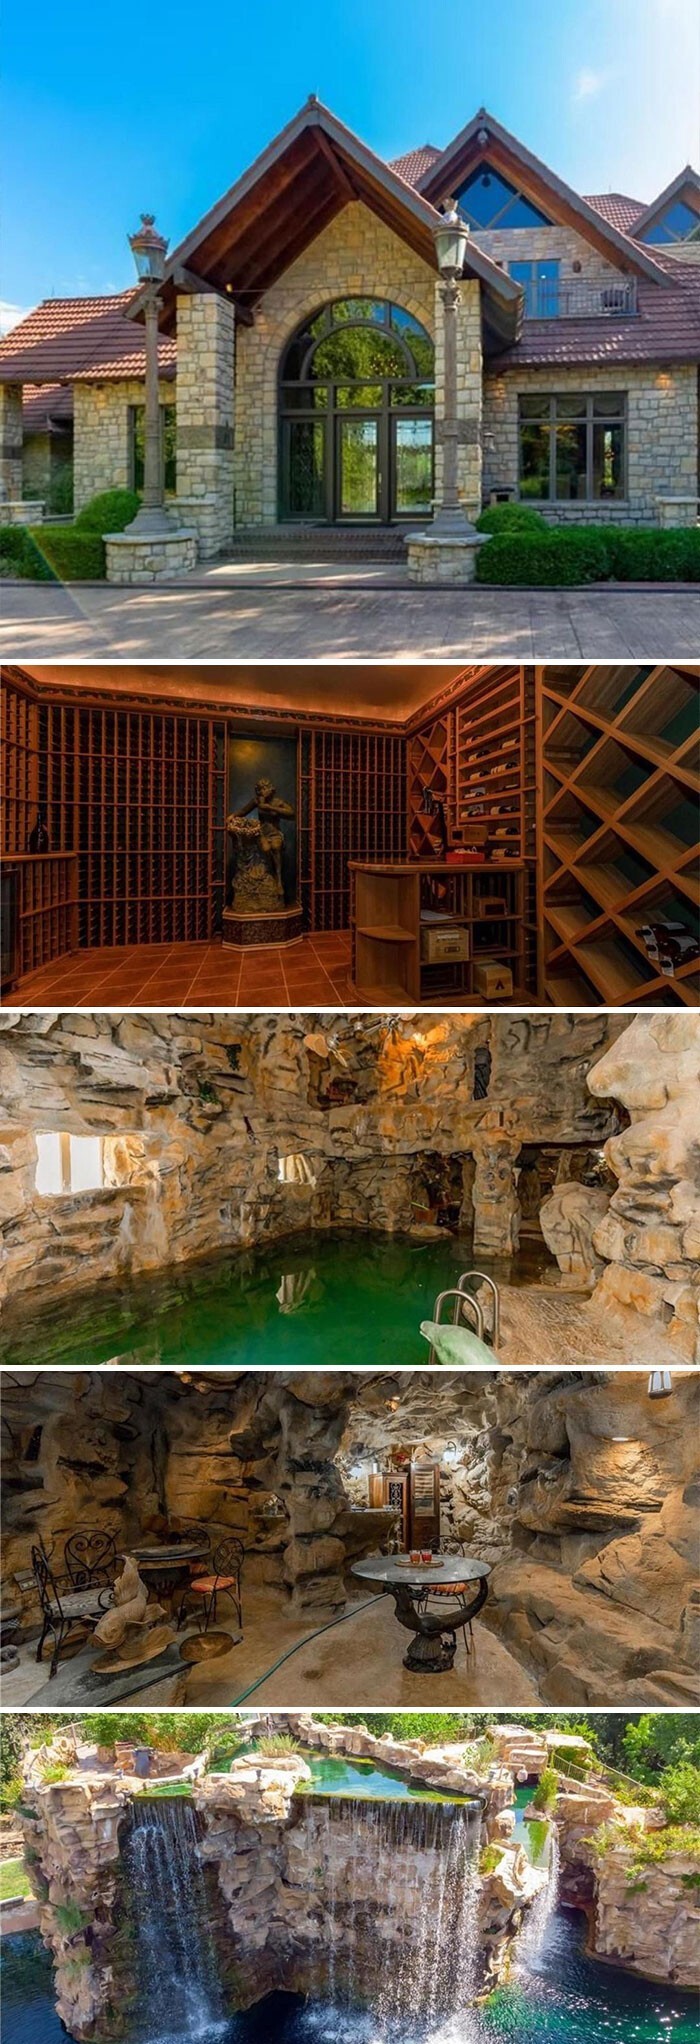 Дом за $10 900 000 с подводными туннелями для ныряния с аквалангом